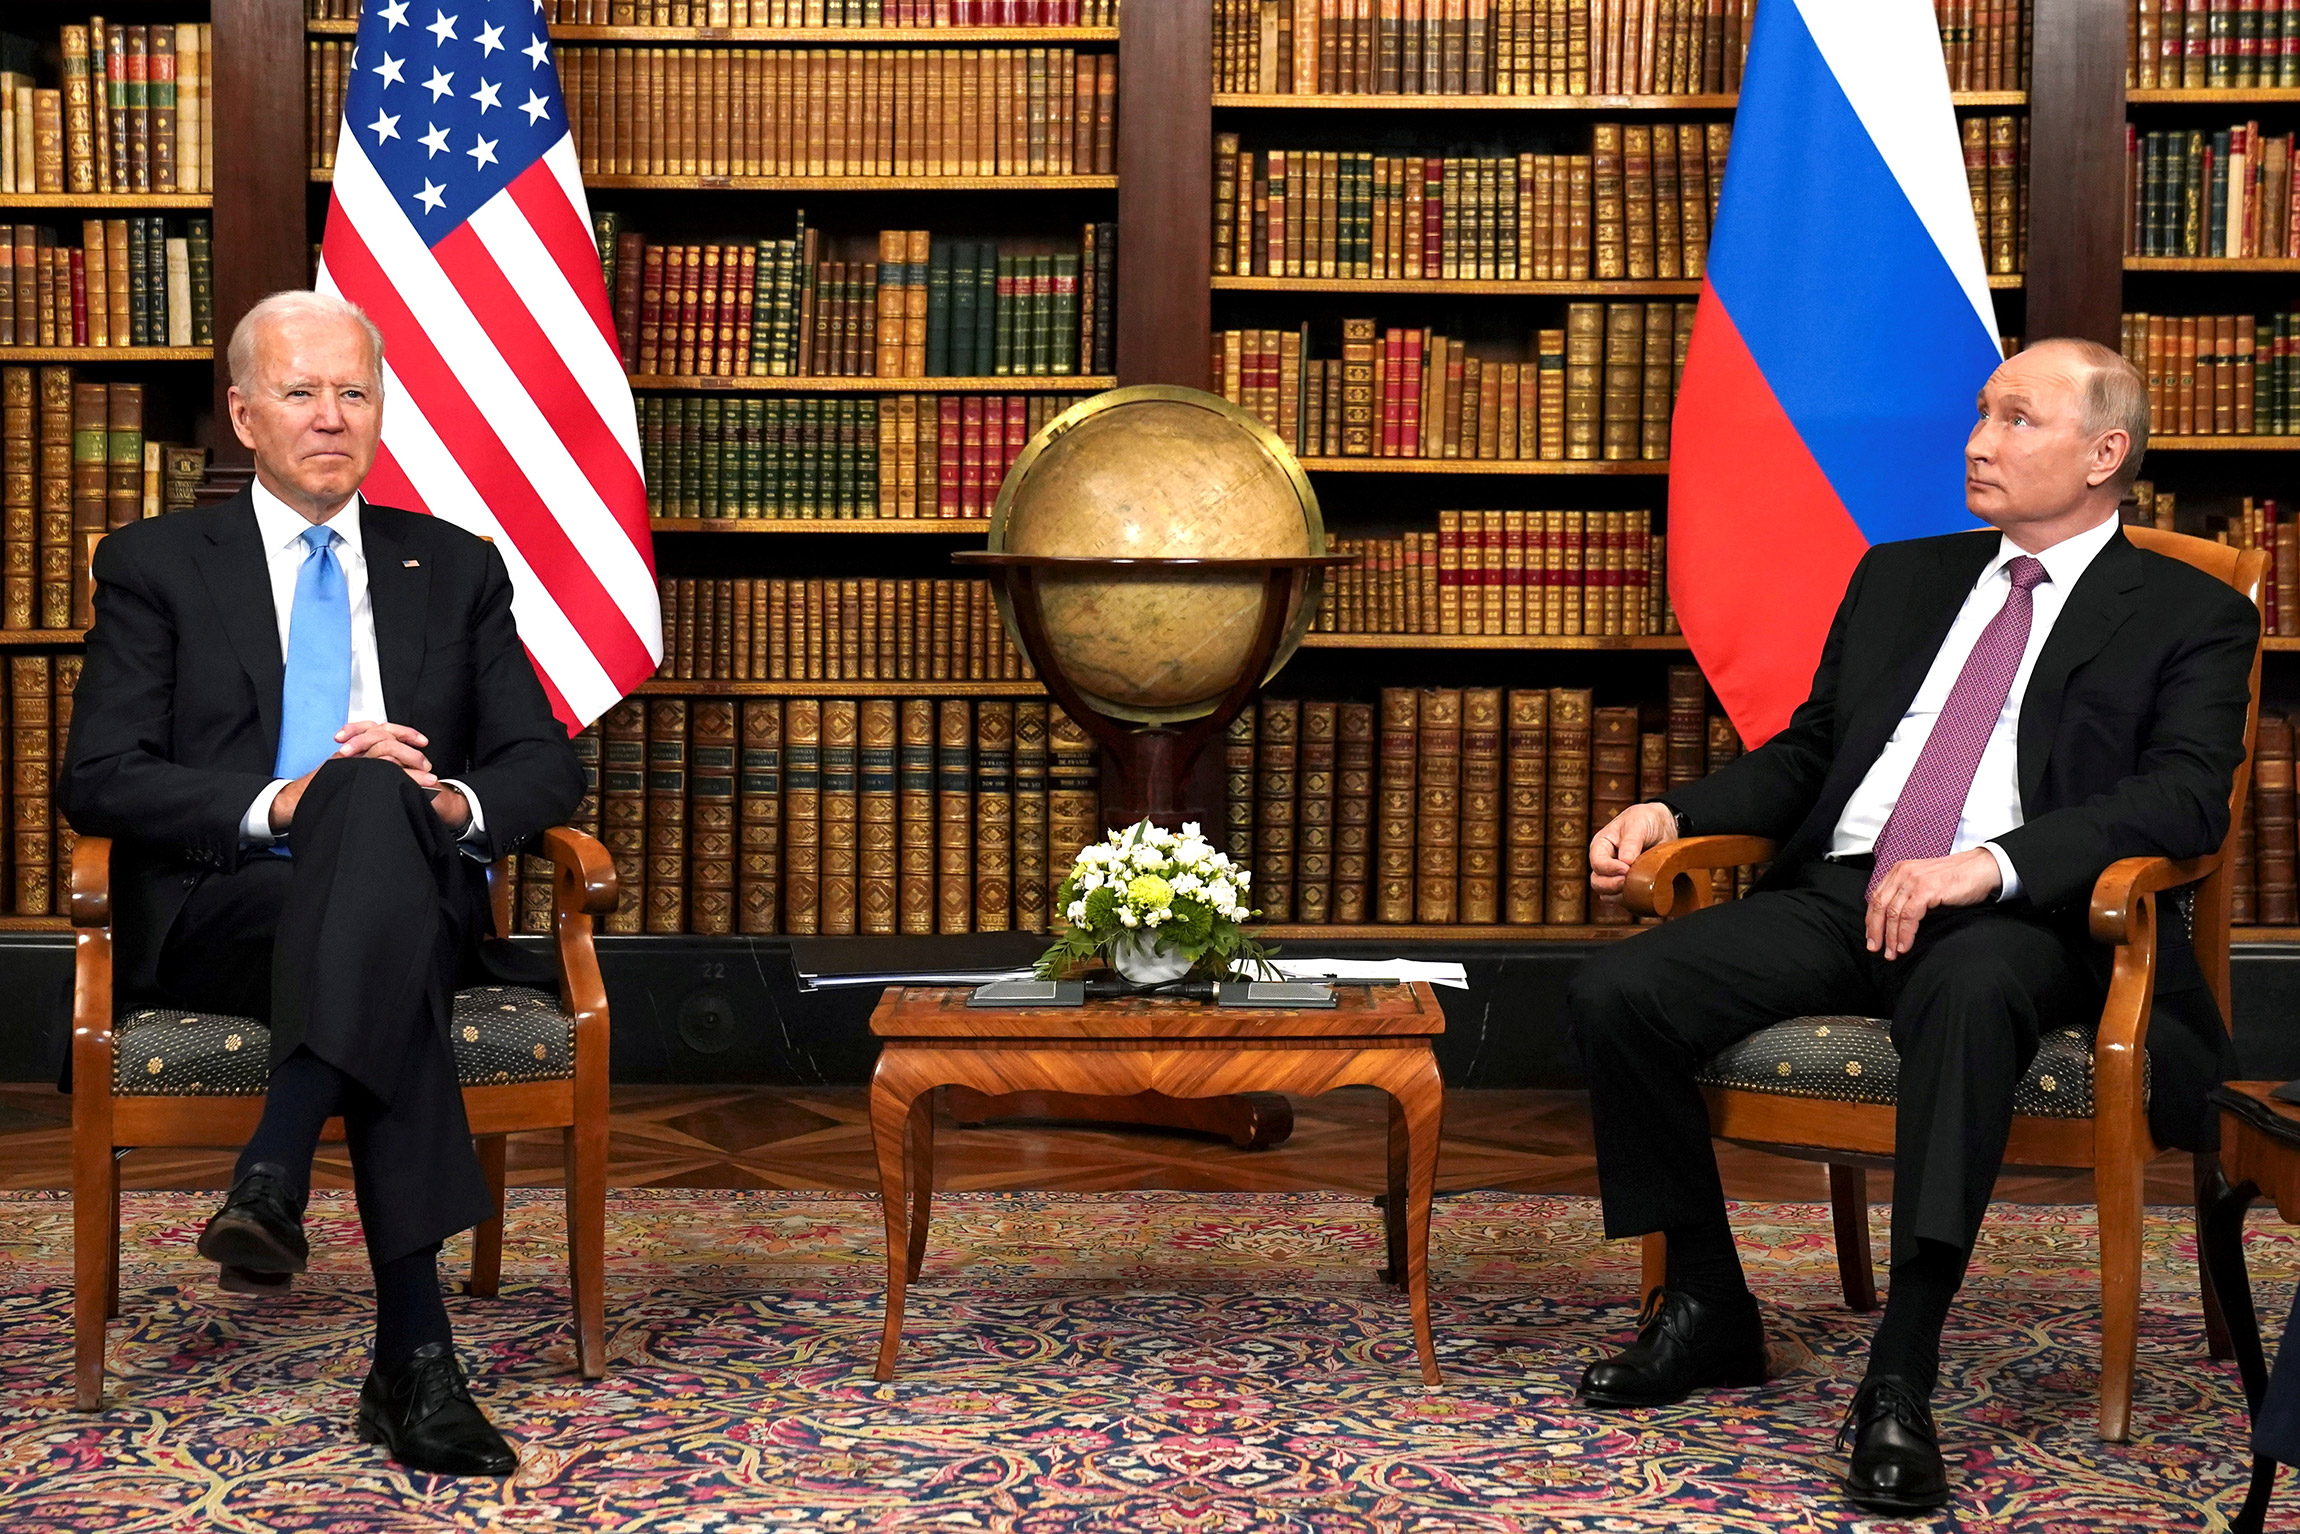 16 июня Джо Байден и Владимир Путин провели саммит в Женеве. Для президента США это была первая встреча с президентом России в ранге главы государства